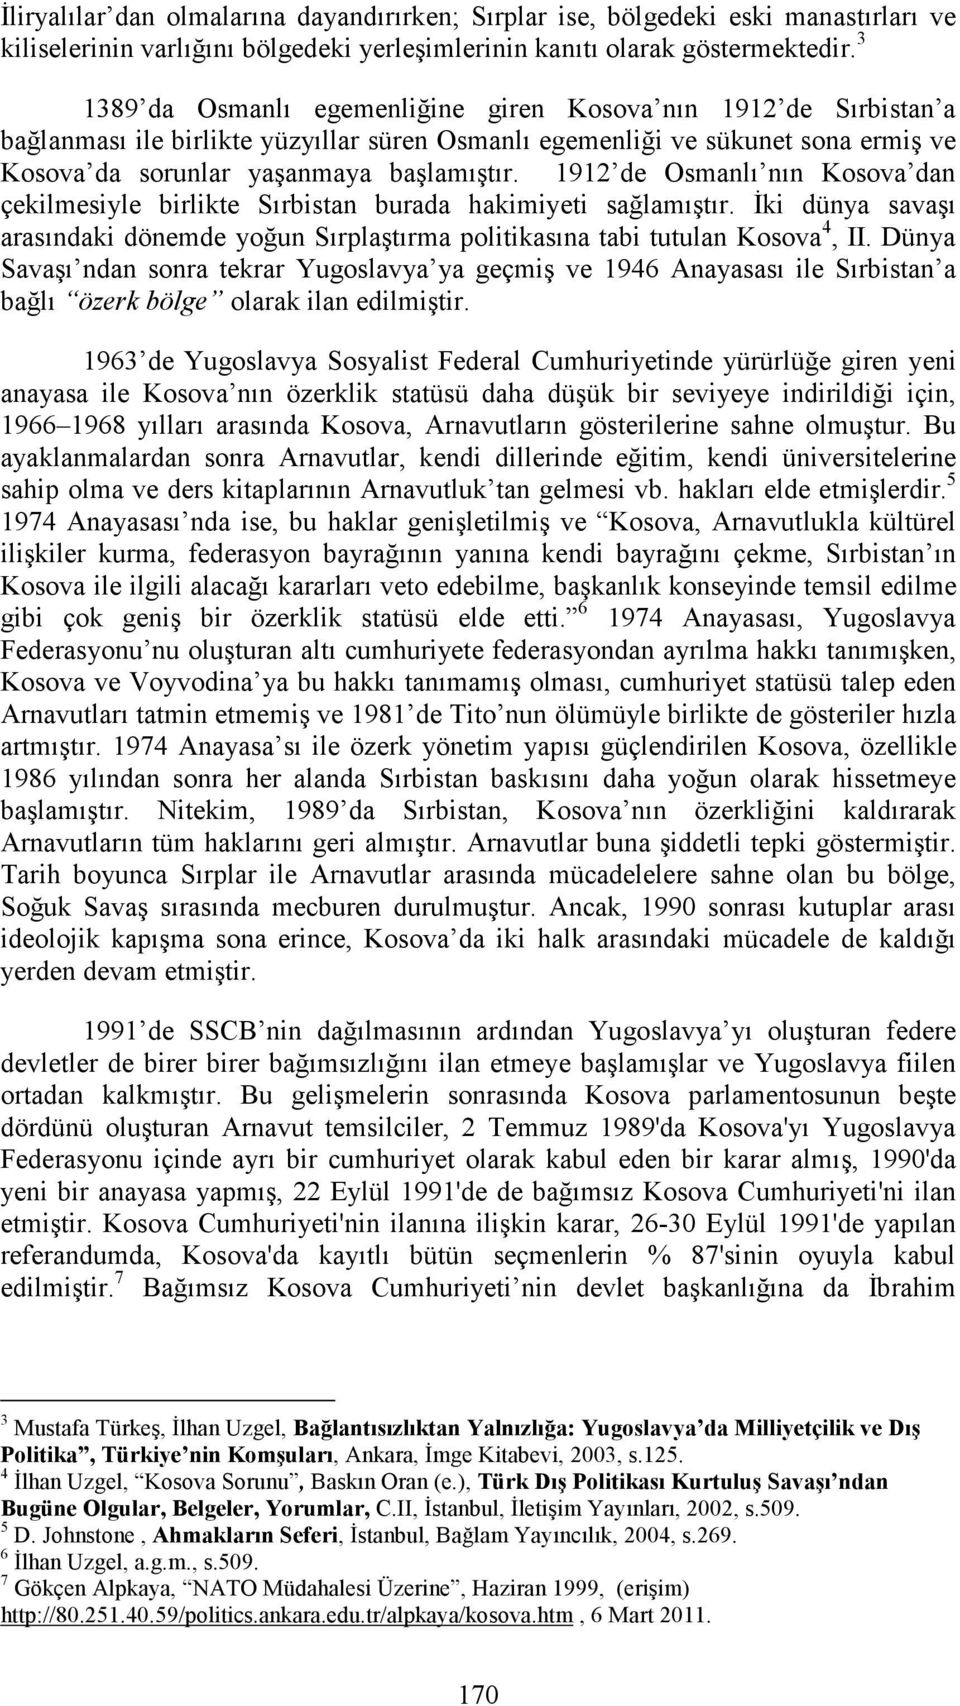 1912 de Osmanlı nın Kosova dan çekilmesiyle birlikte Sırbistan burada hakimiyeti sağlamıştır. Đki dünya savaşı arasındaki dönemde yoğun Sırplaştırma politikasına tabi tutulan Kosova 4, II.